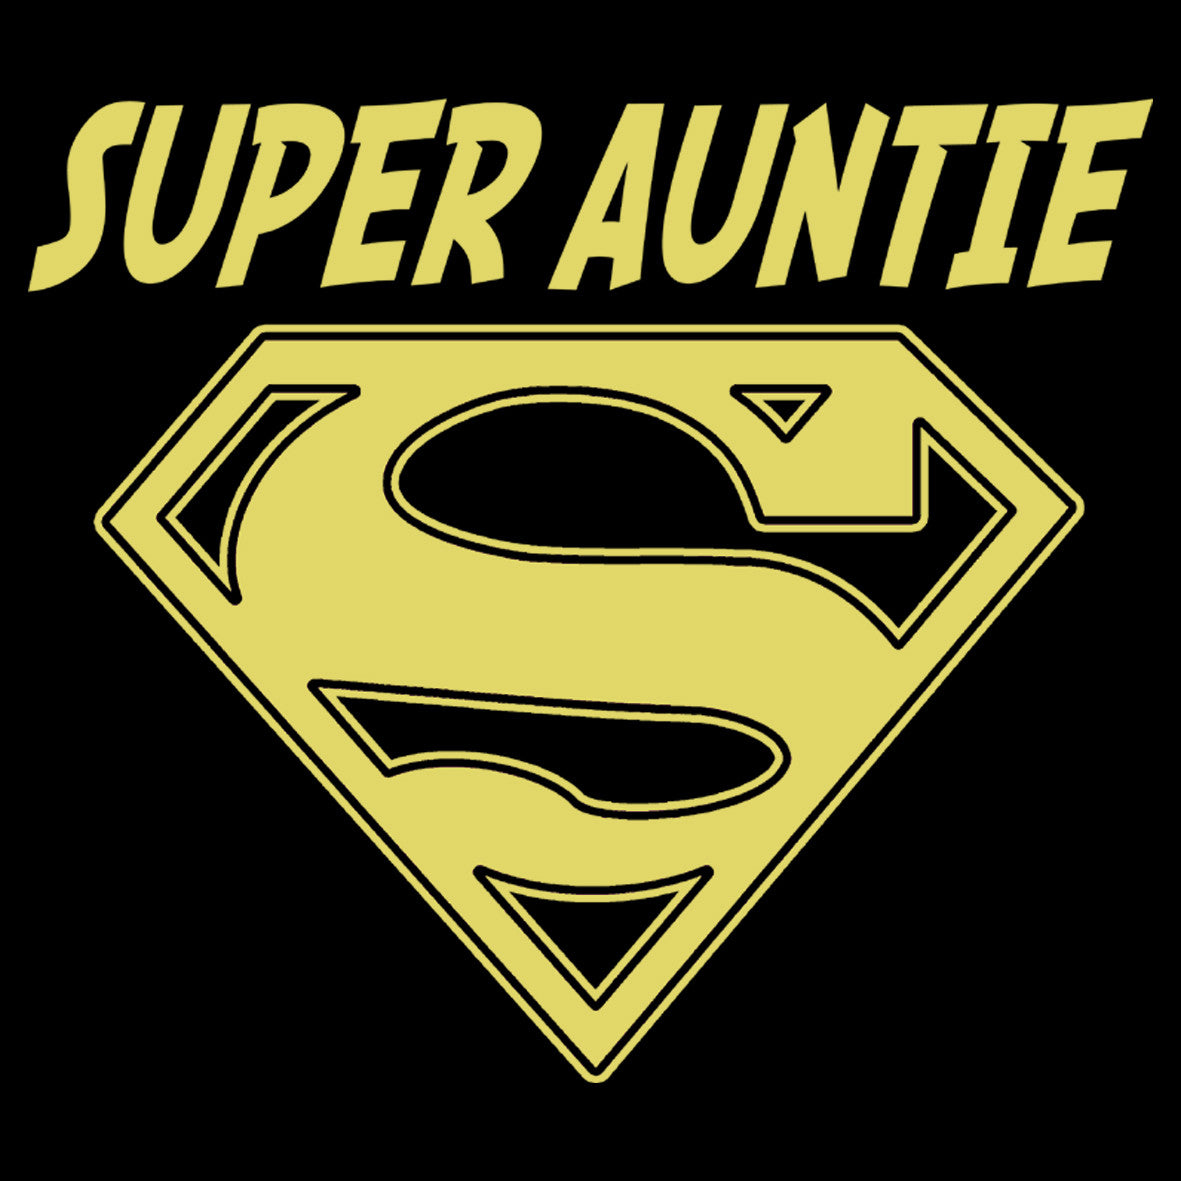 Super Auntie